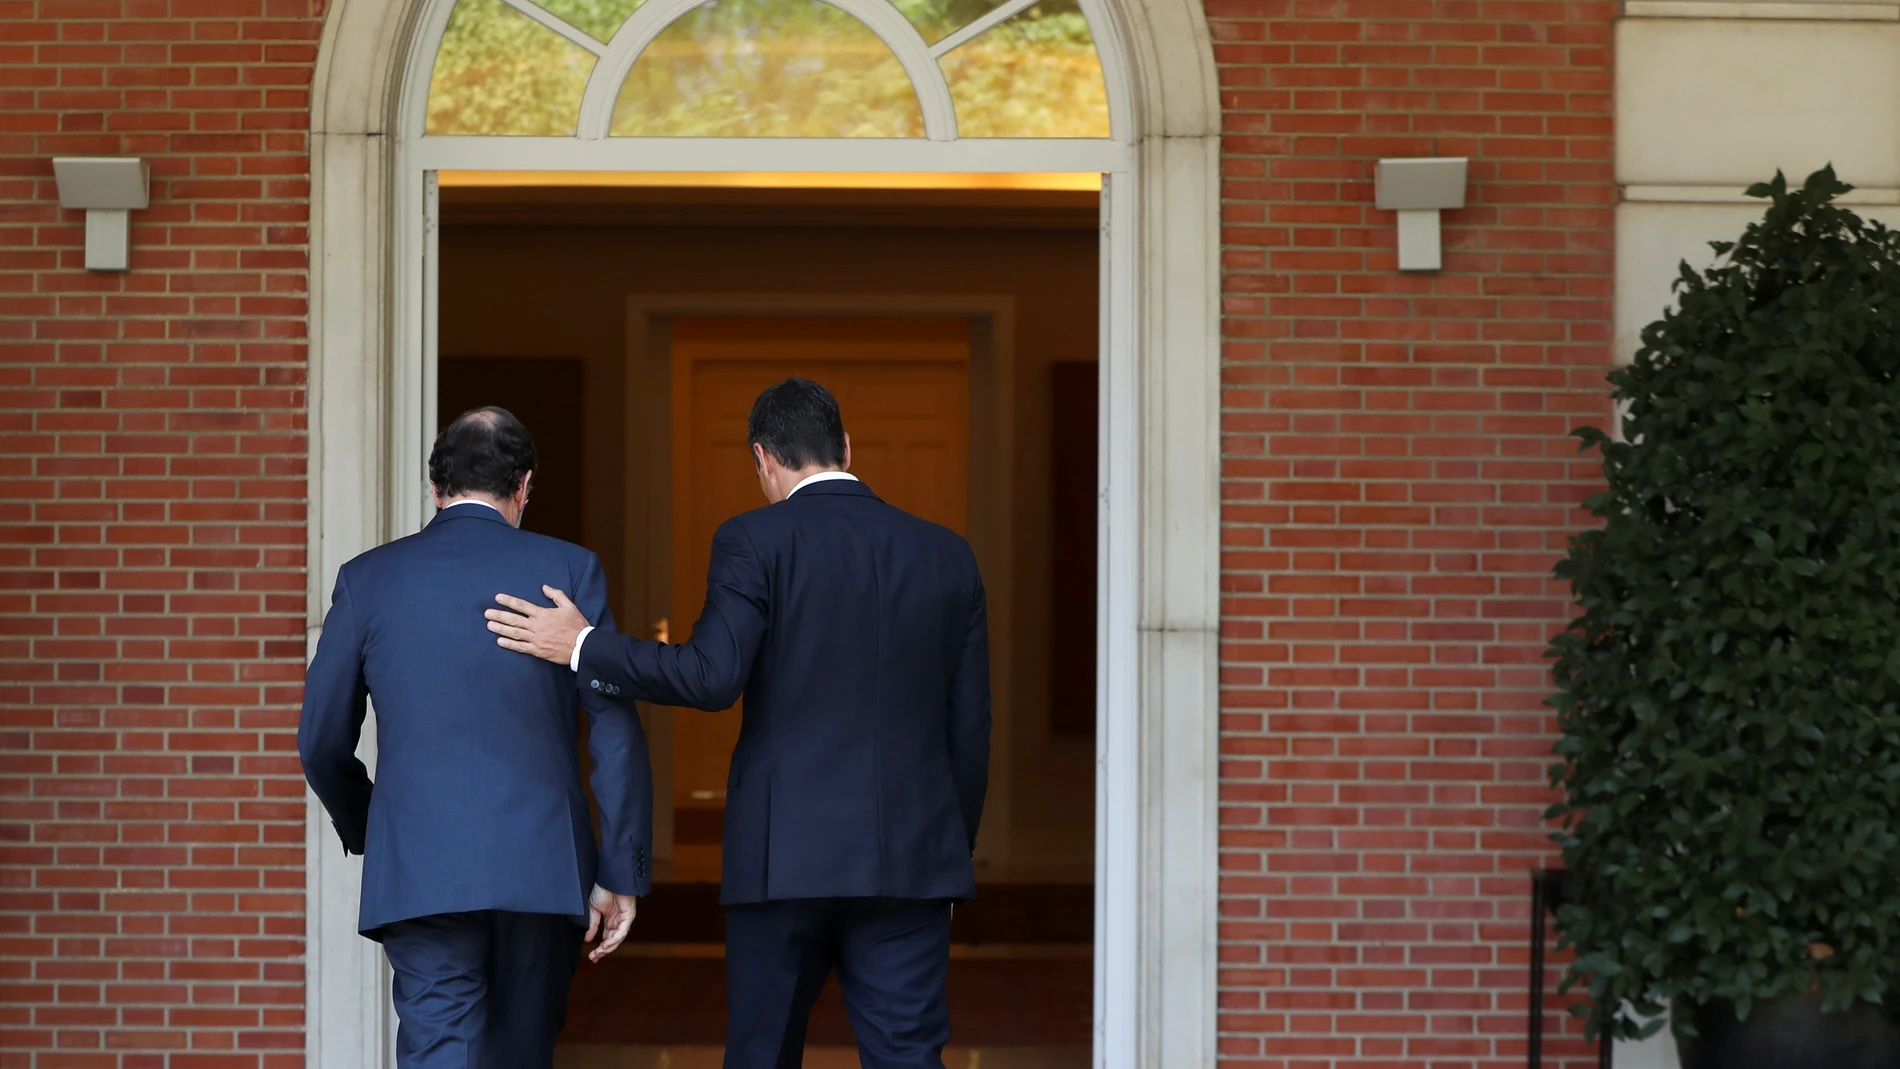 Mariano Rajoy y Pedro Sánchez en el Palacio de la Moncloa